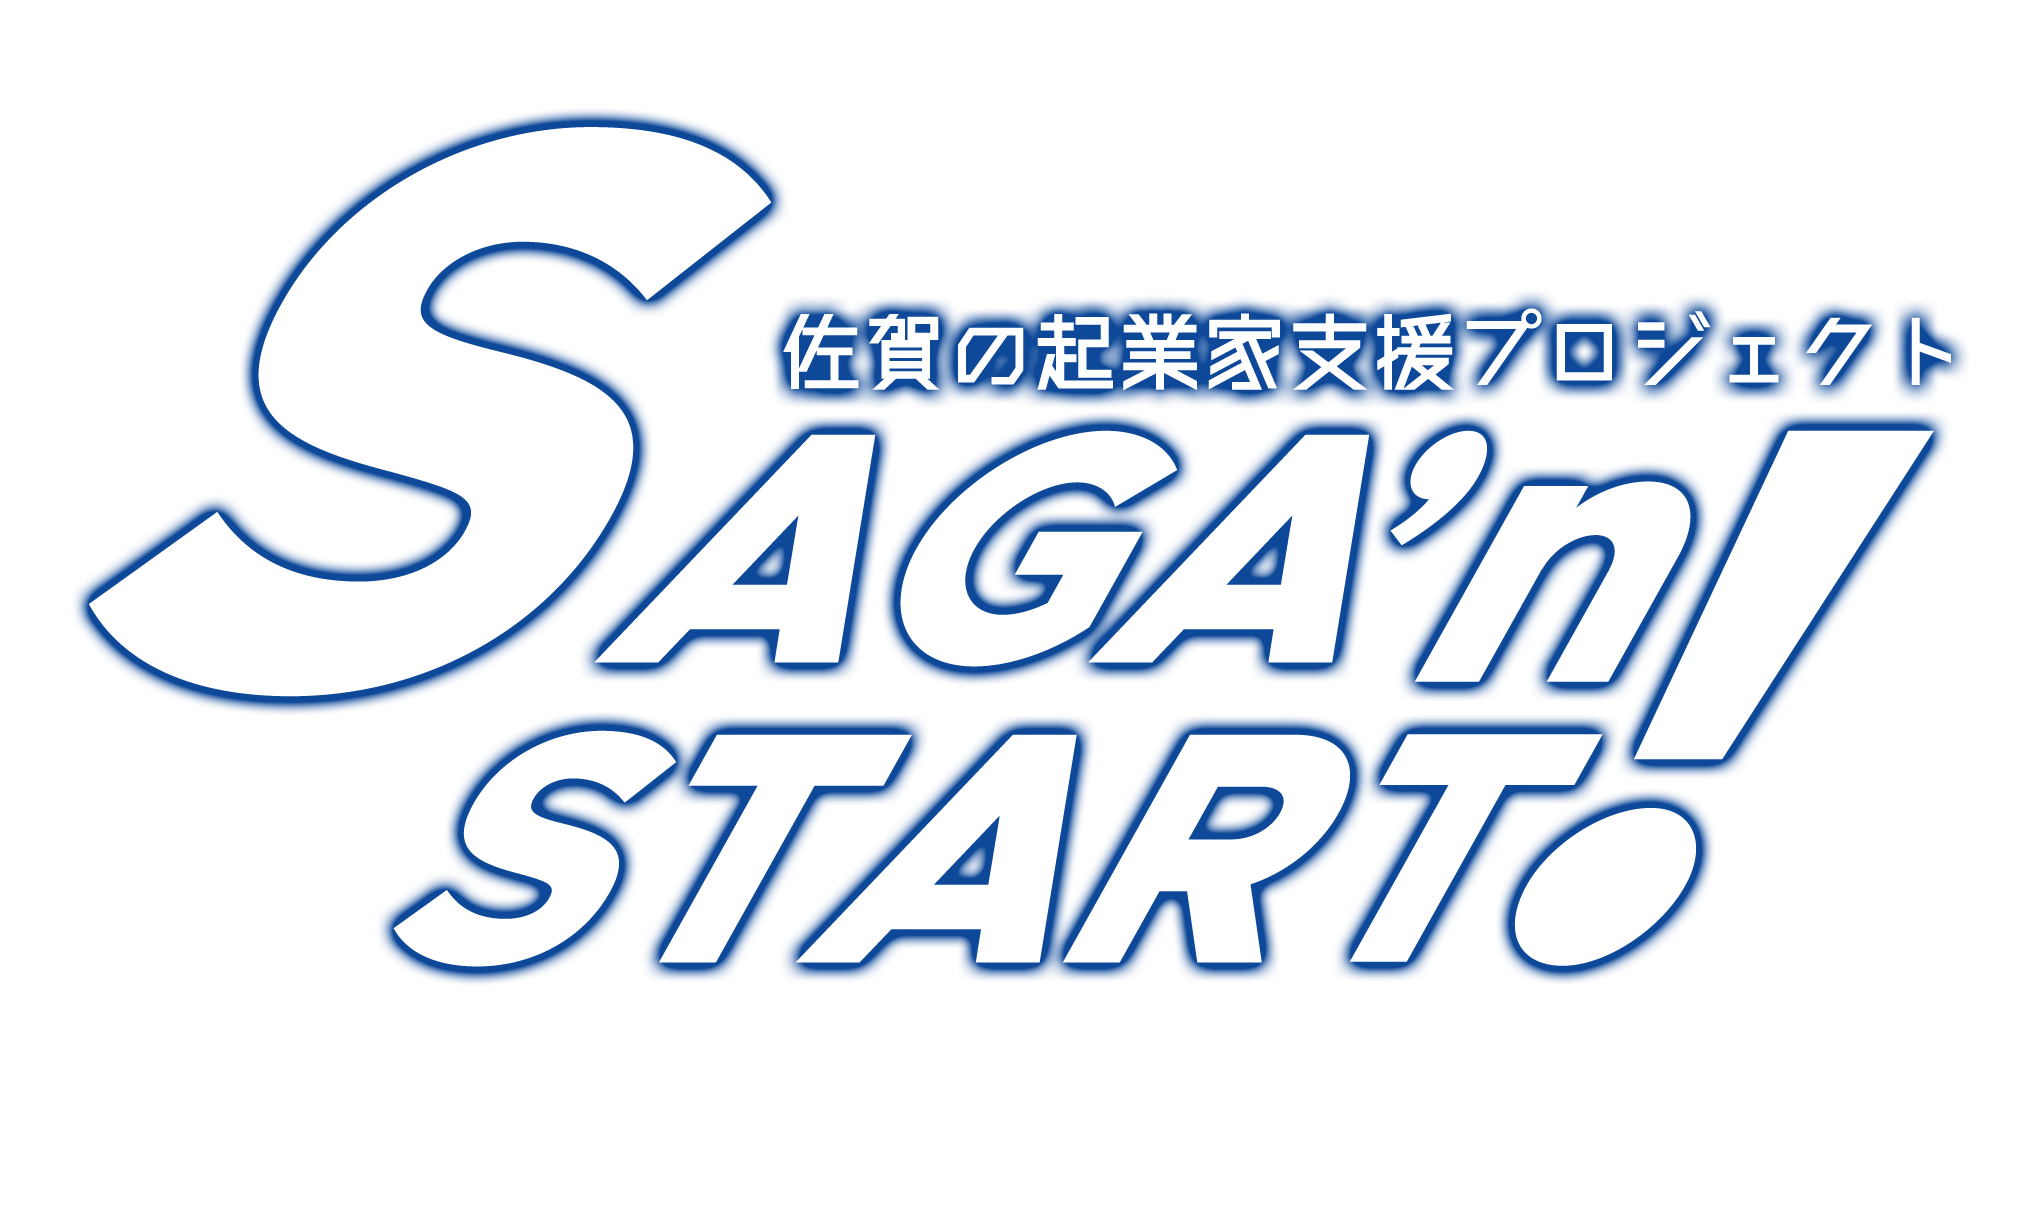 SAGA’n START 起業支援金